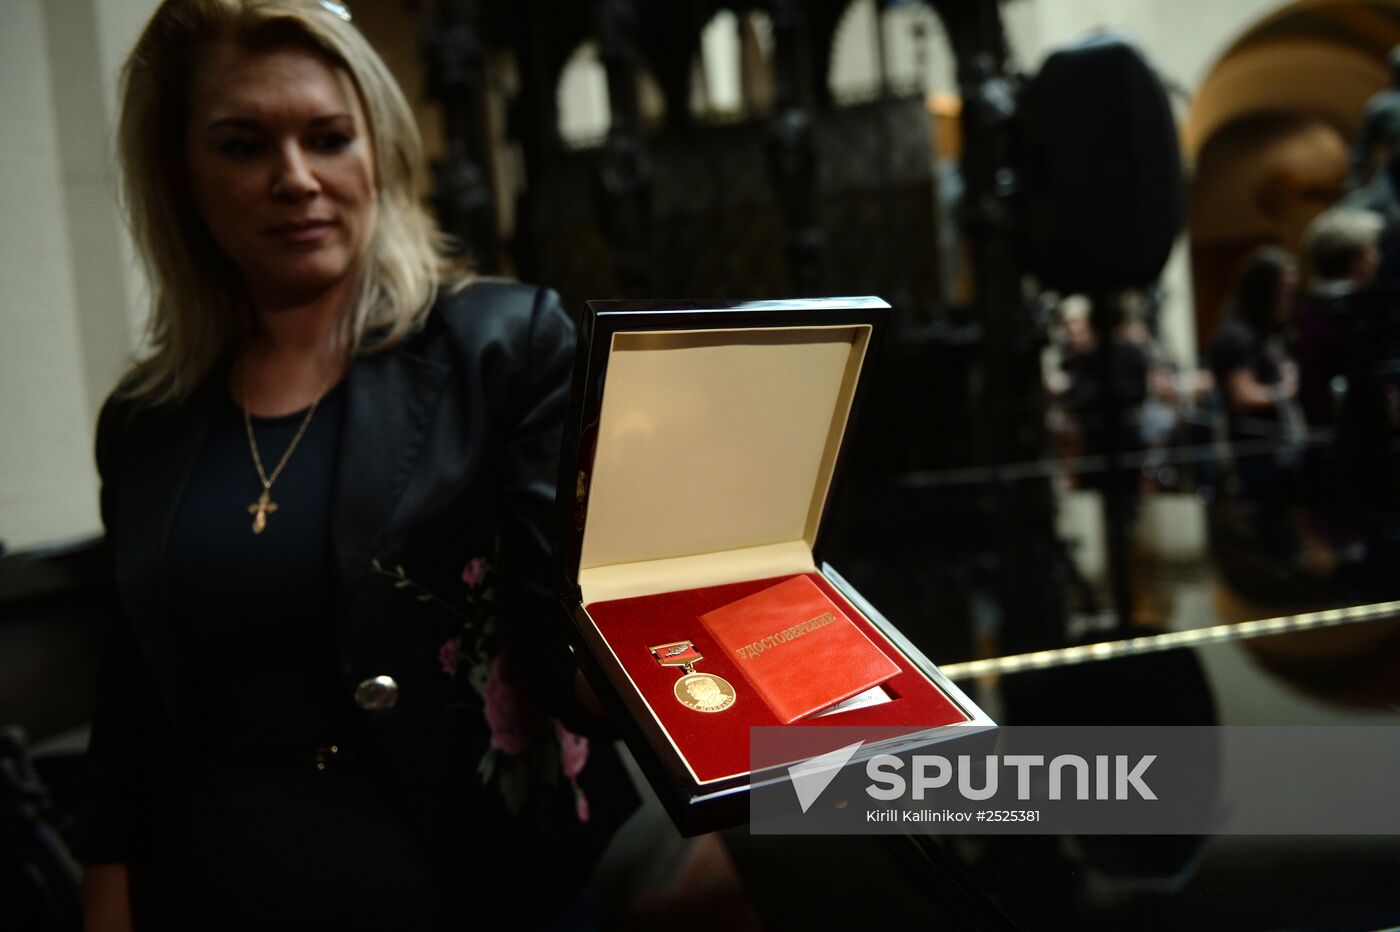 The Lev Nikolayev Gold Medal awards ceremony